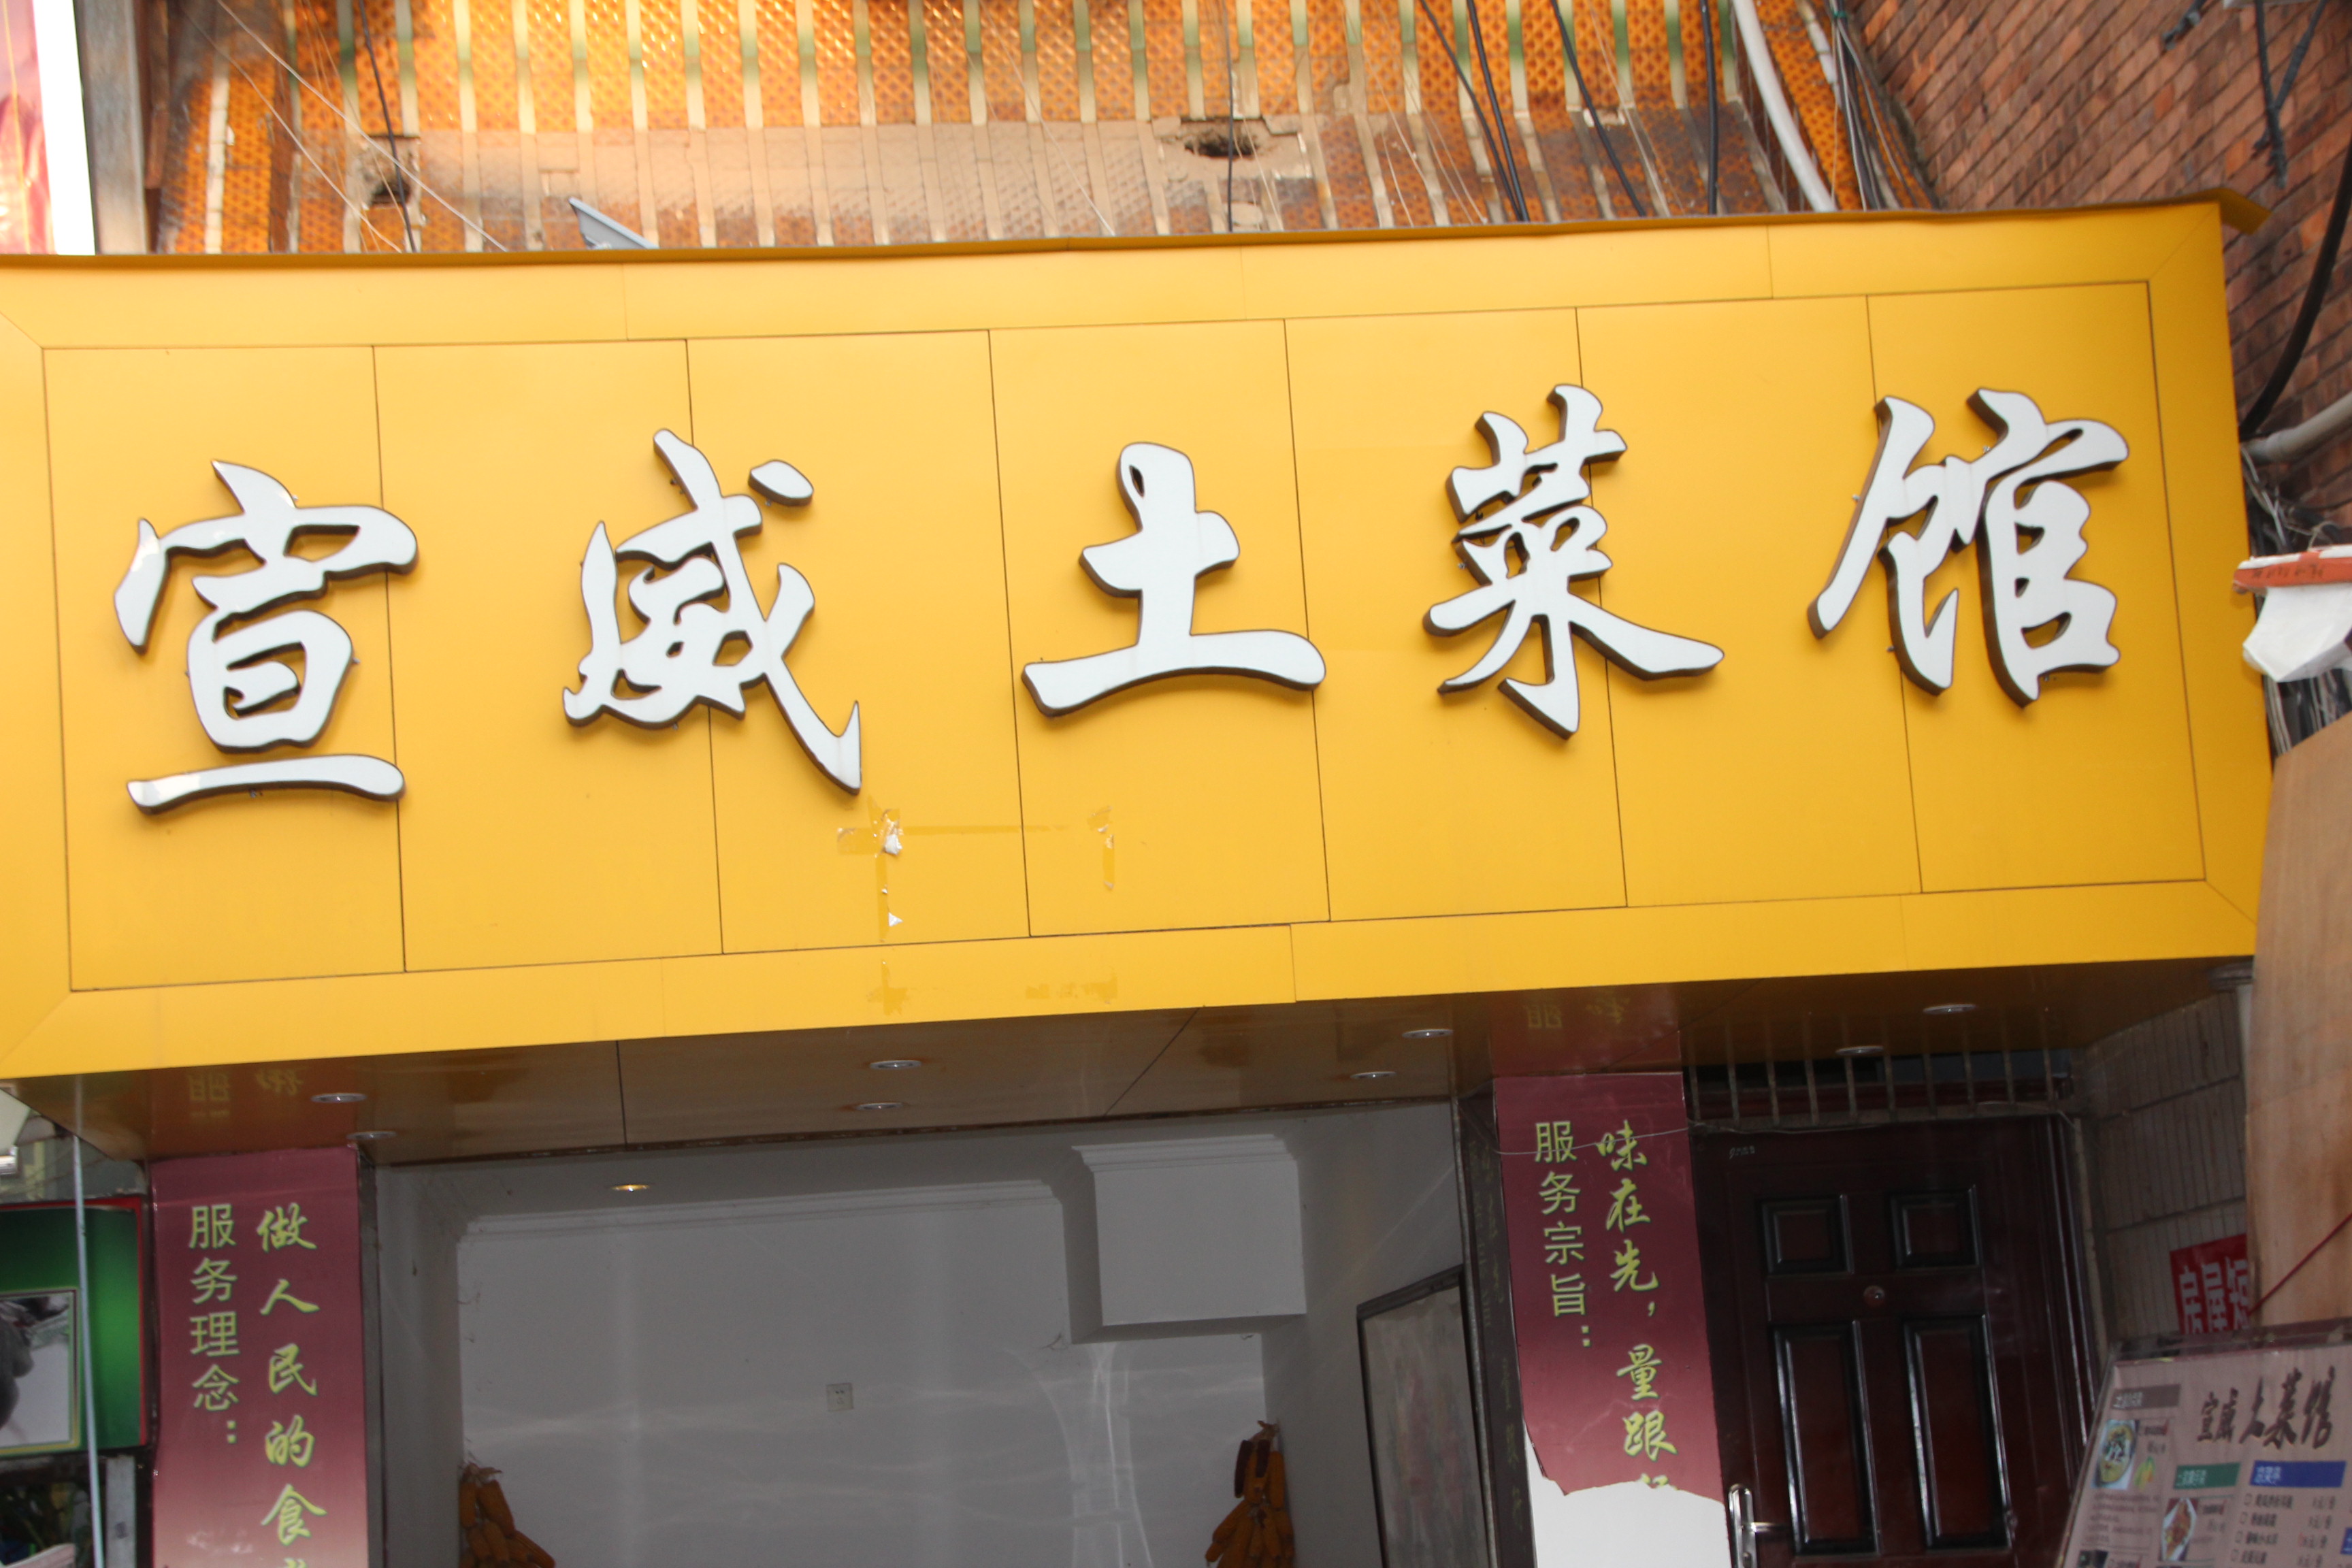 看似简陋的门头在昆明景星花鸟市场旁边,有一个名为宣威土菜馆的特色